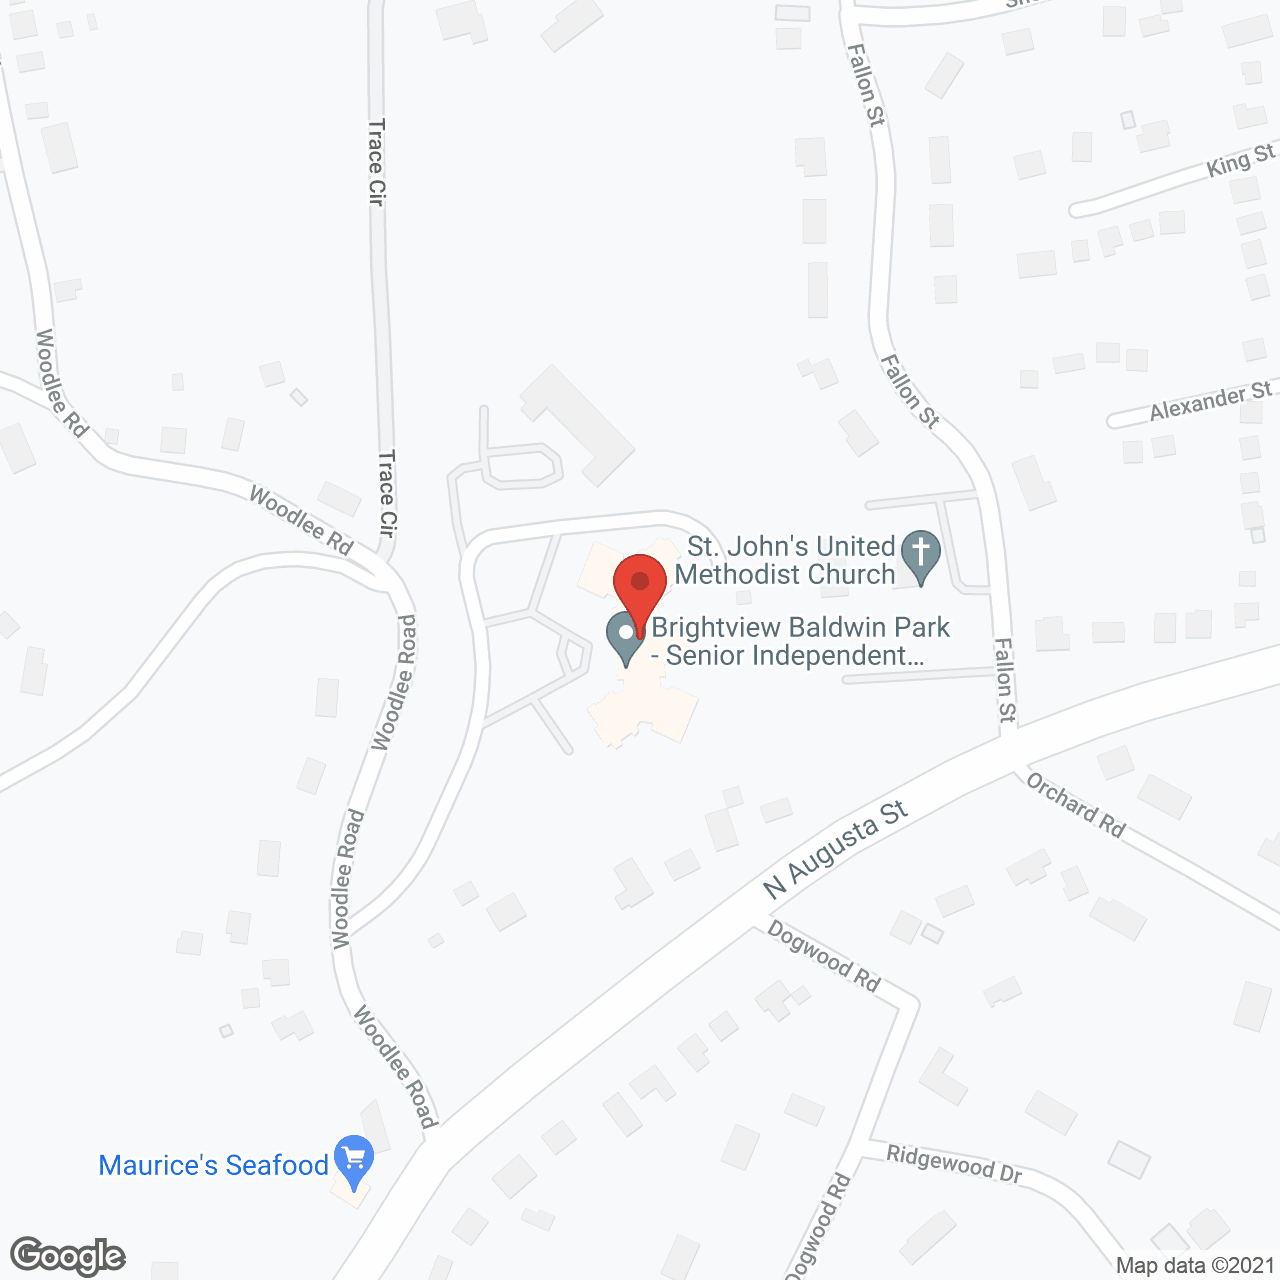 AVIVA Baldwin Park in google map